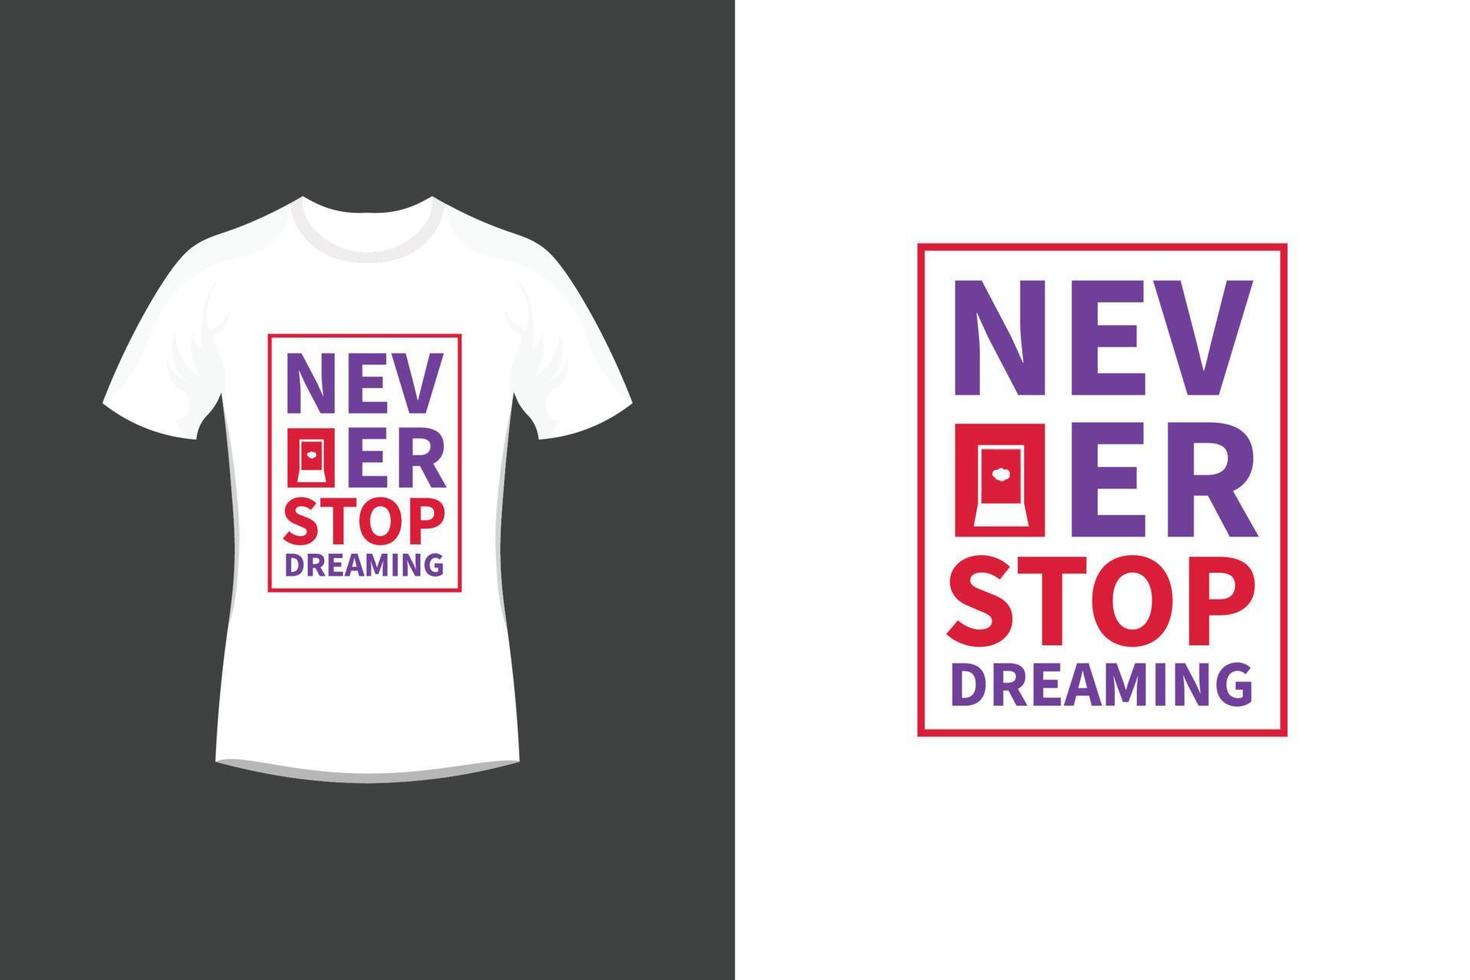 non smettere mai di sognare citazioni motivazionali ispiratrici e design di t-shirt tipografiche vettore